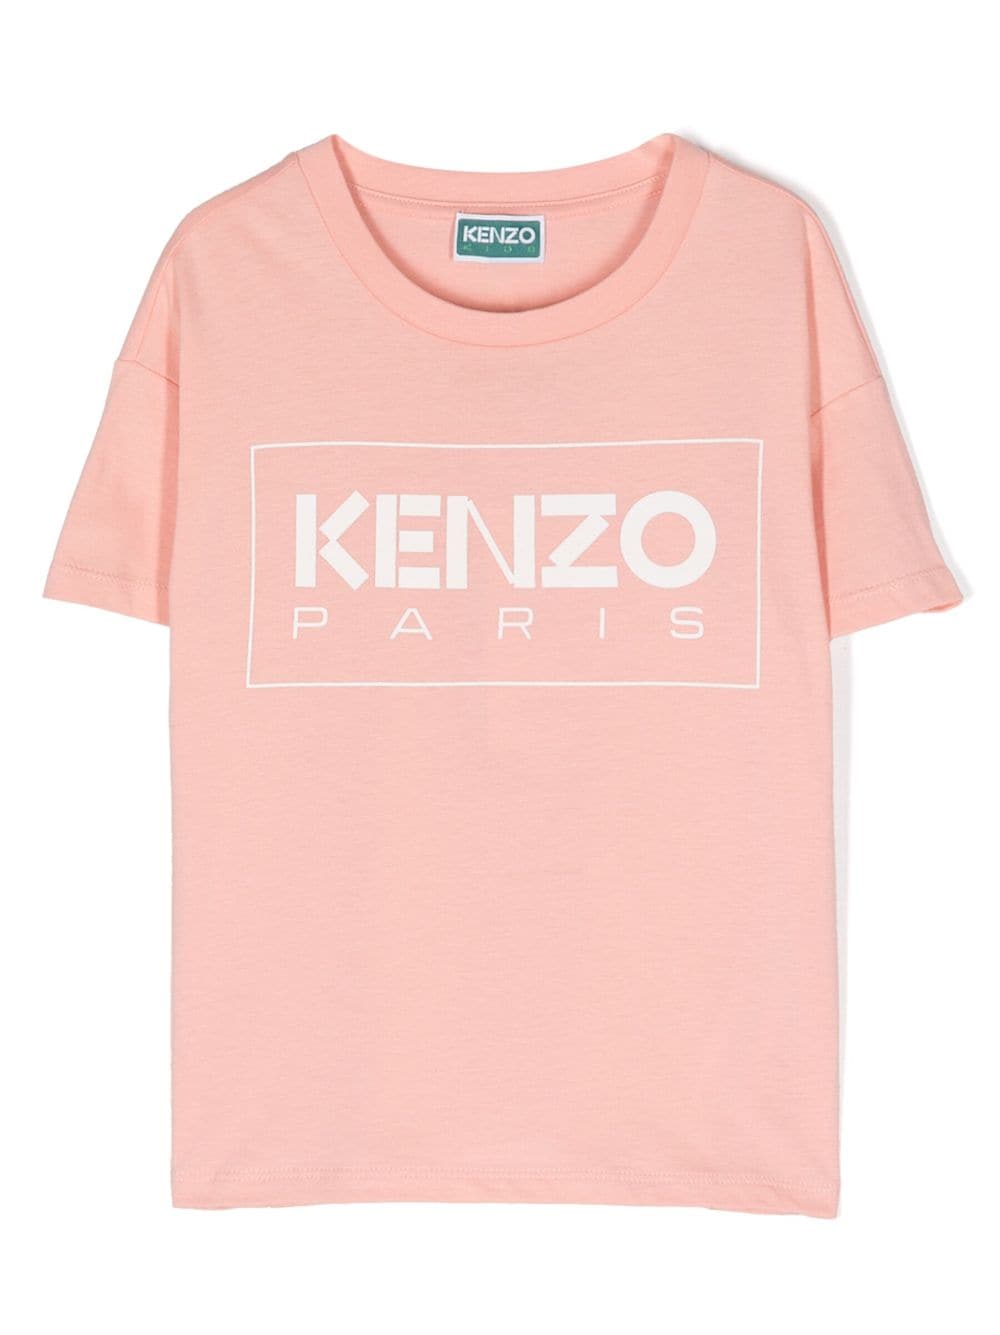 Kenzo Short Sleeves Tee-shirt In Pink